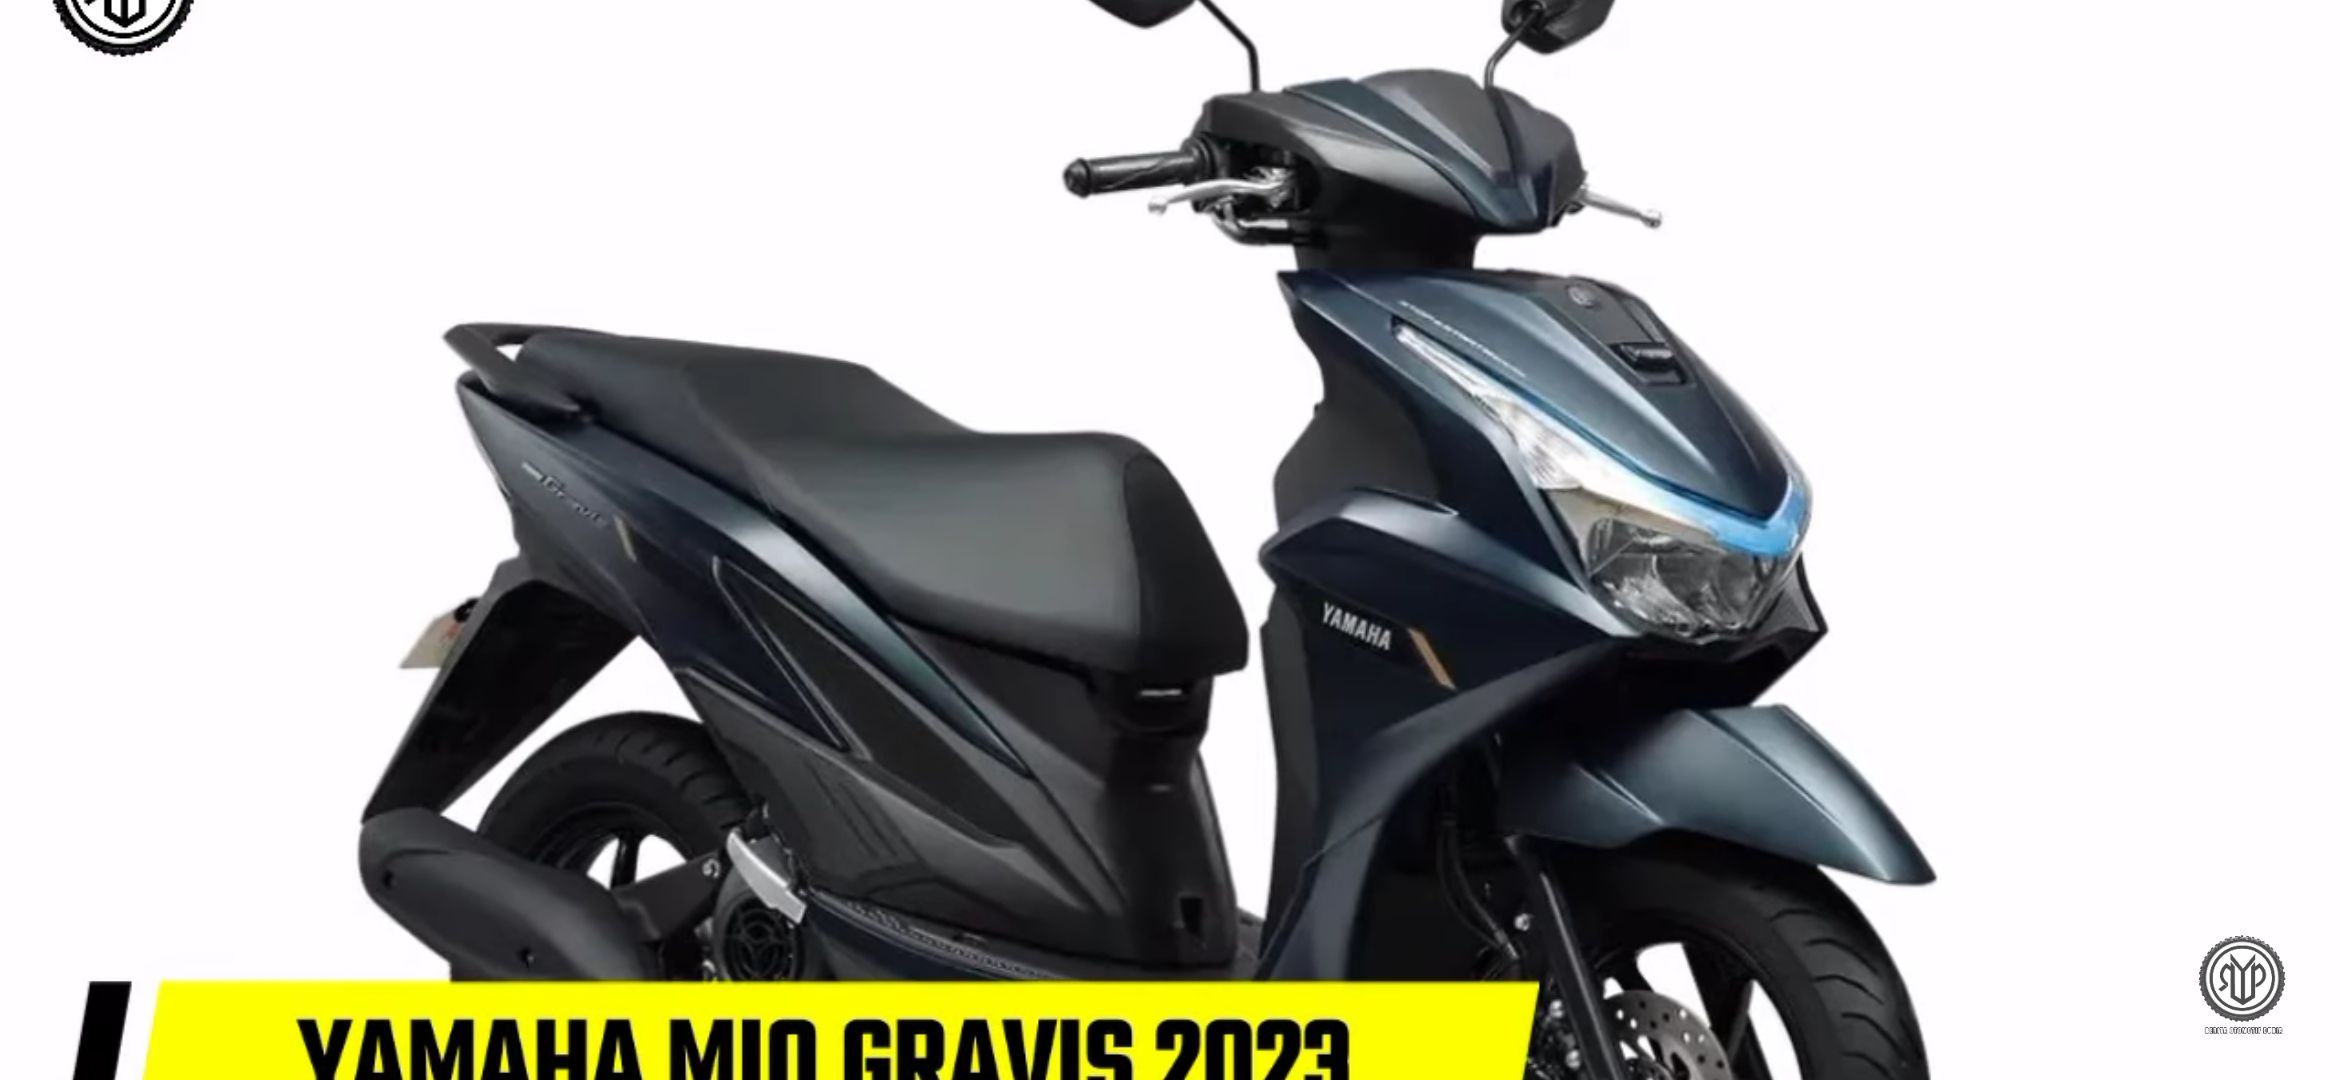 Yamaha Mio Gravis 2023.